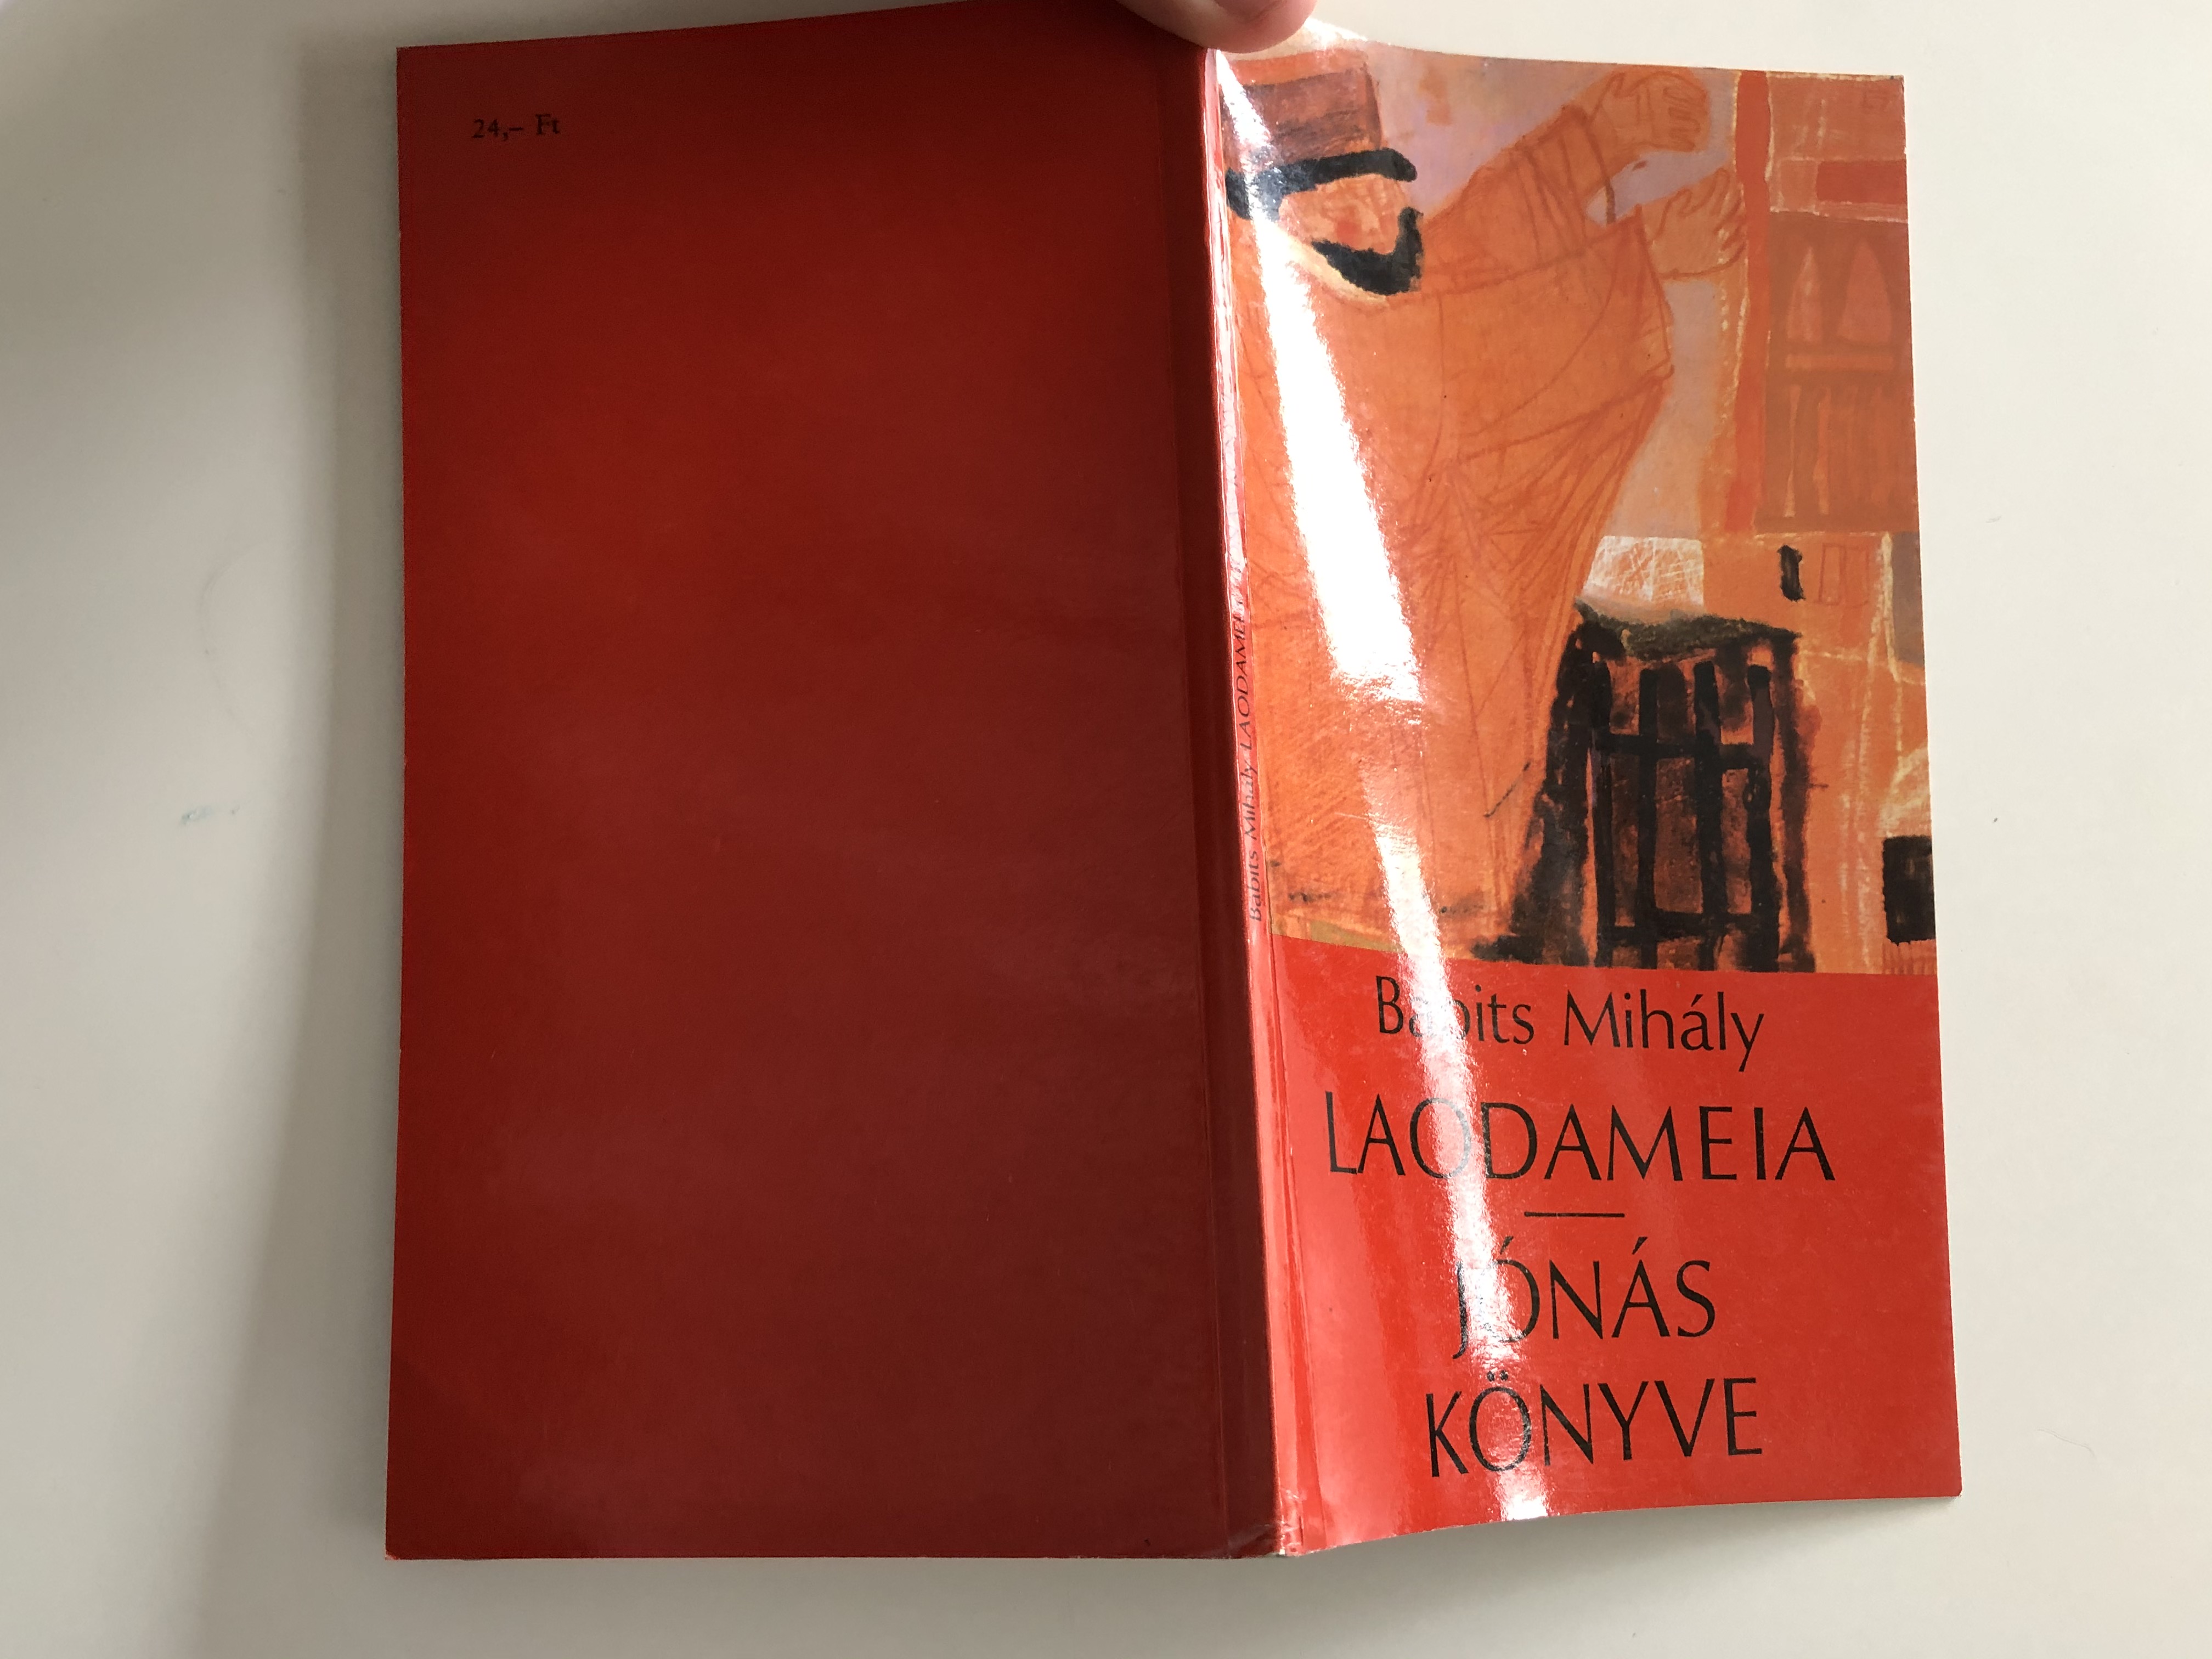 Laodameia - Jónás könyve by Babits Mihály 1.JPG